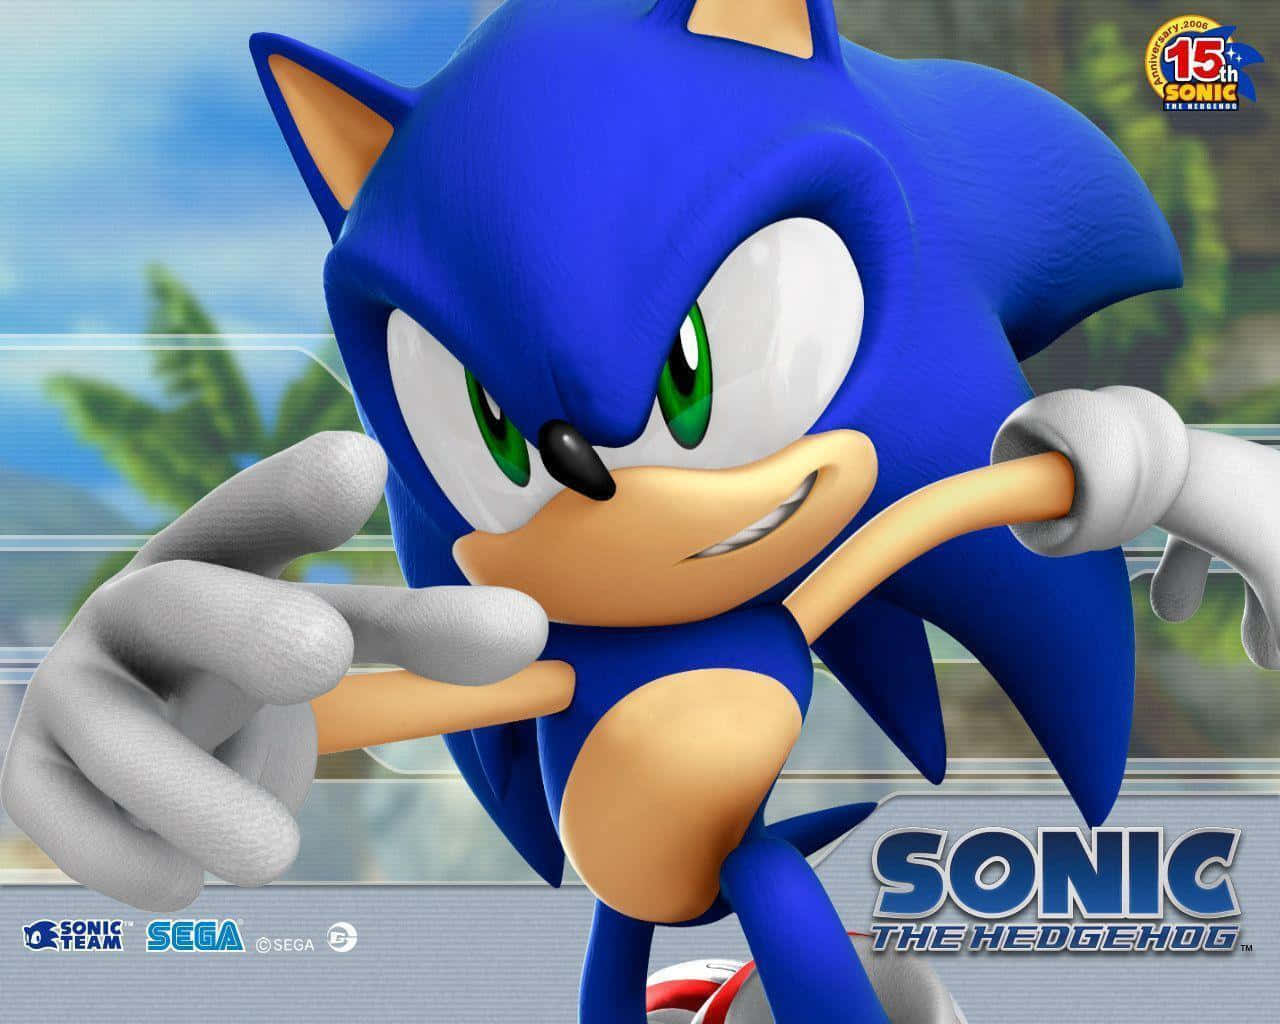 Sonic The Hedgehog: Hurtigere end nogensinde!